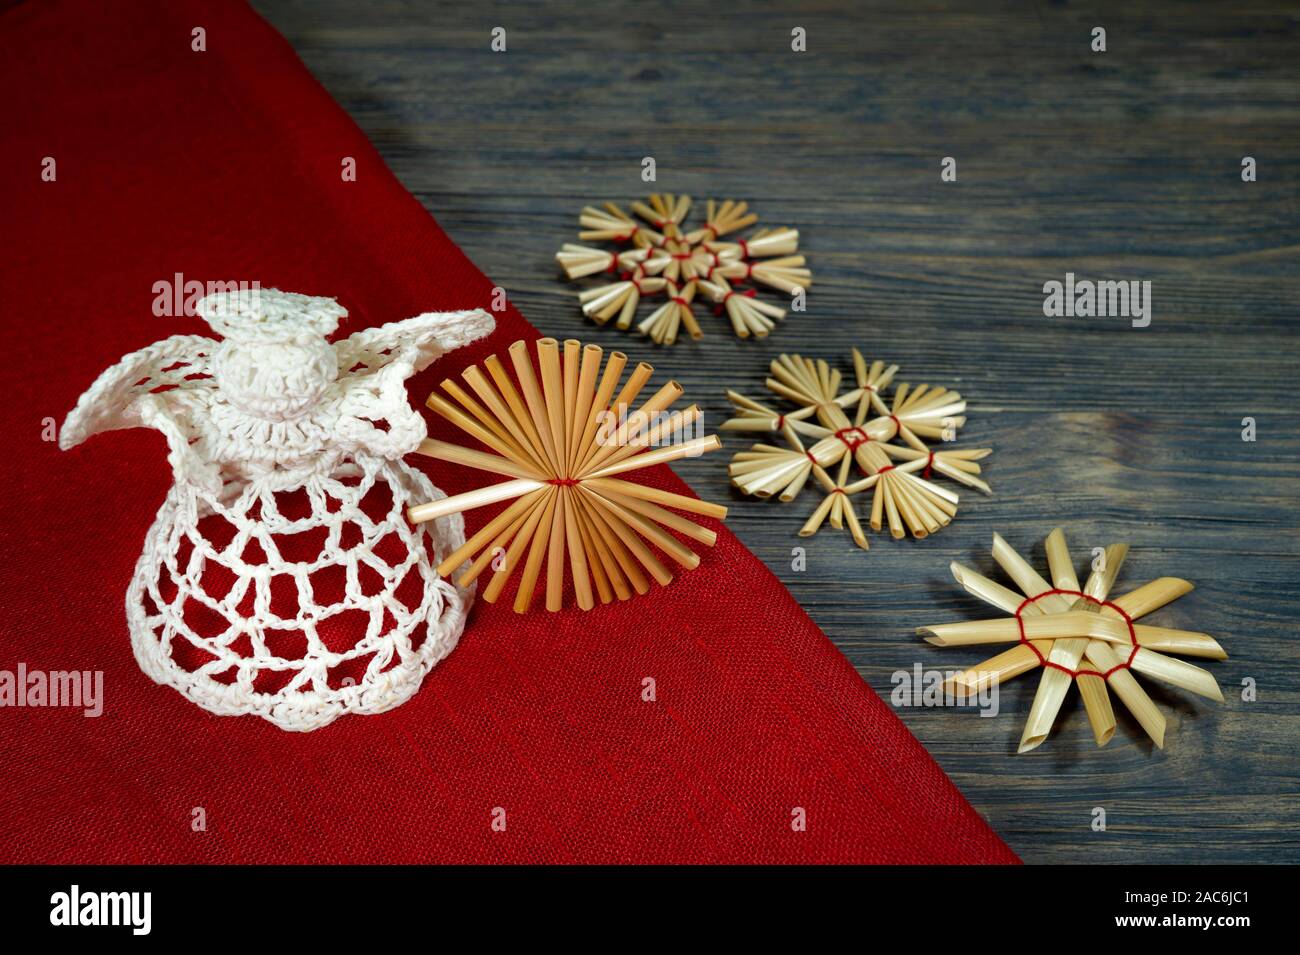 Noël encore la vie rustique avec des ornements de paille, un ange au crochet, tissu rouge correspondant sur un fond de bois, eco friendly pour Noël Banque D'Images